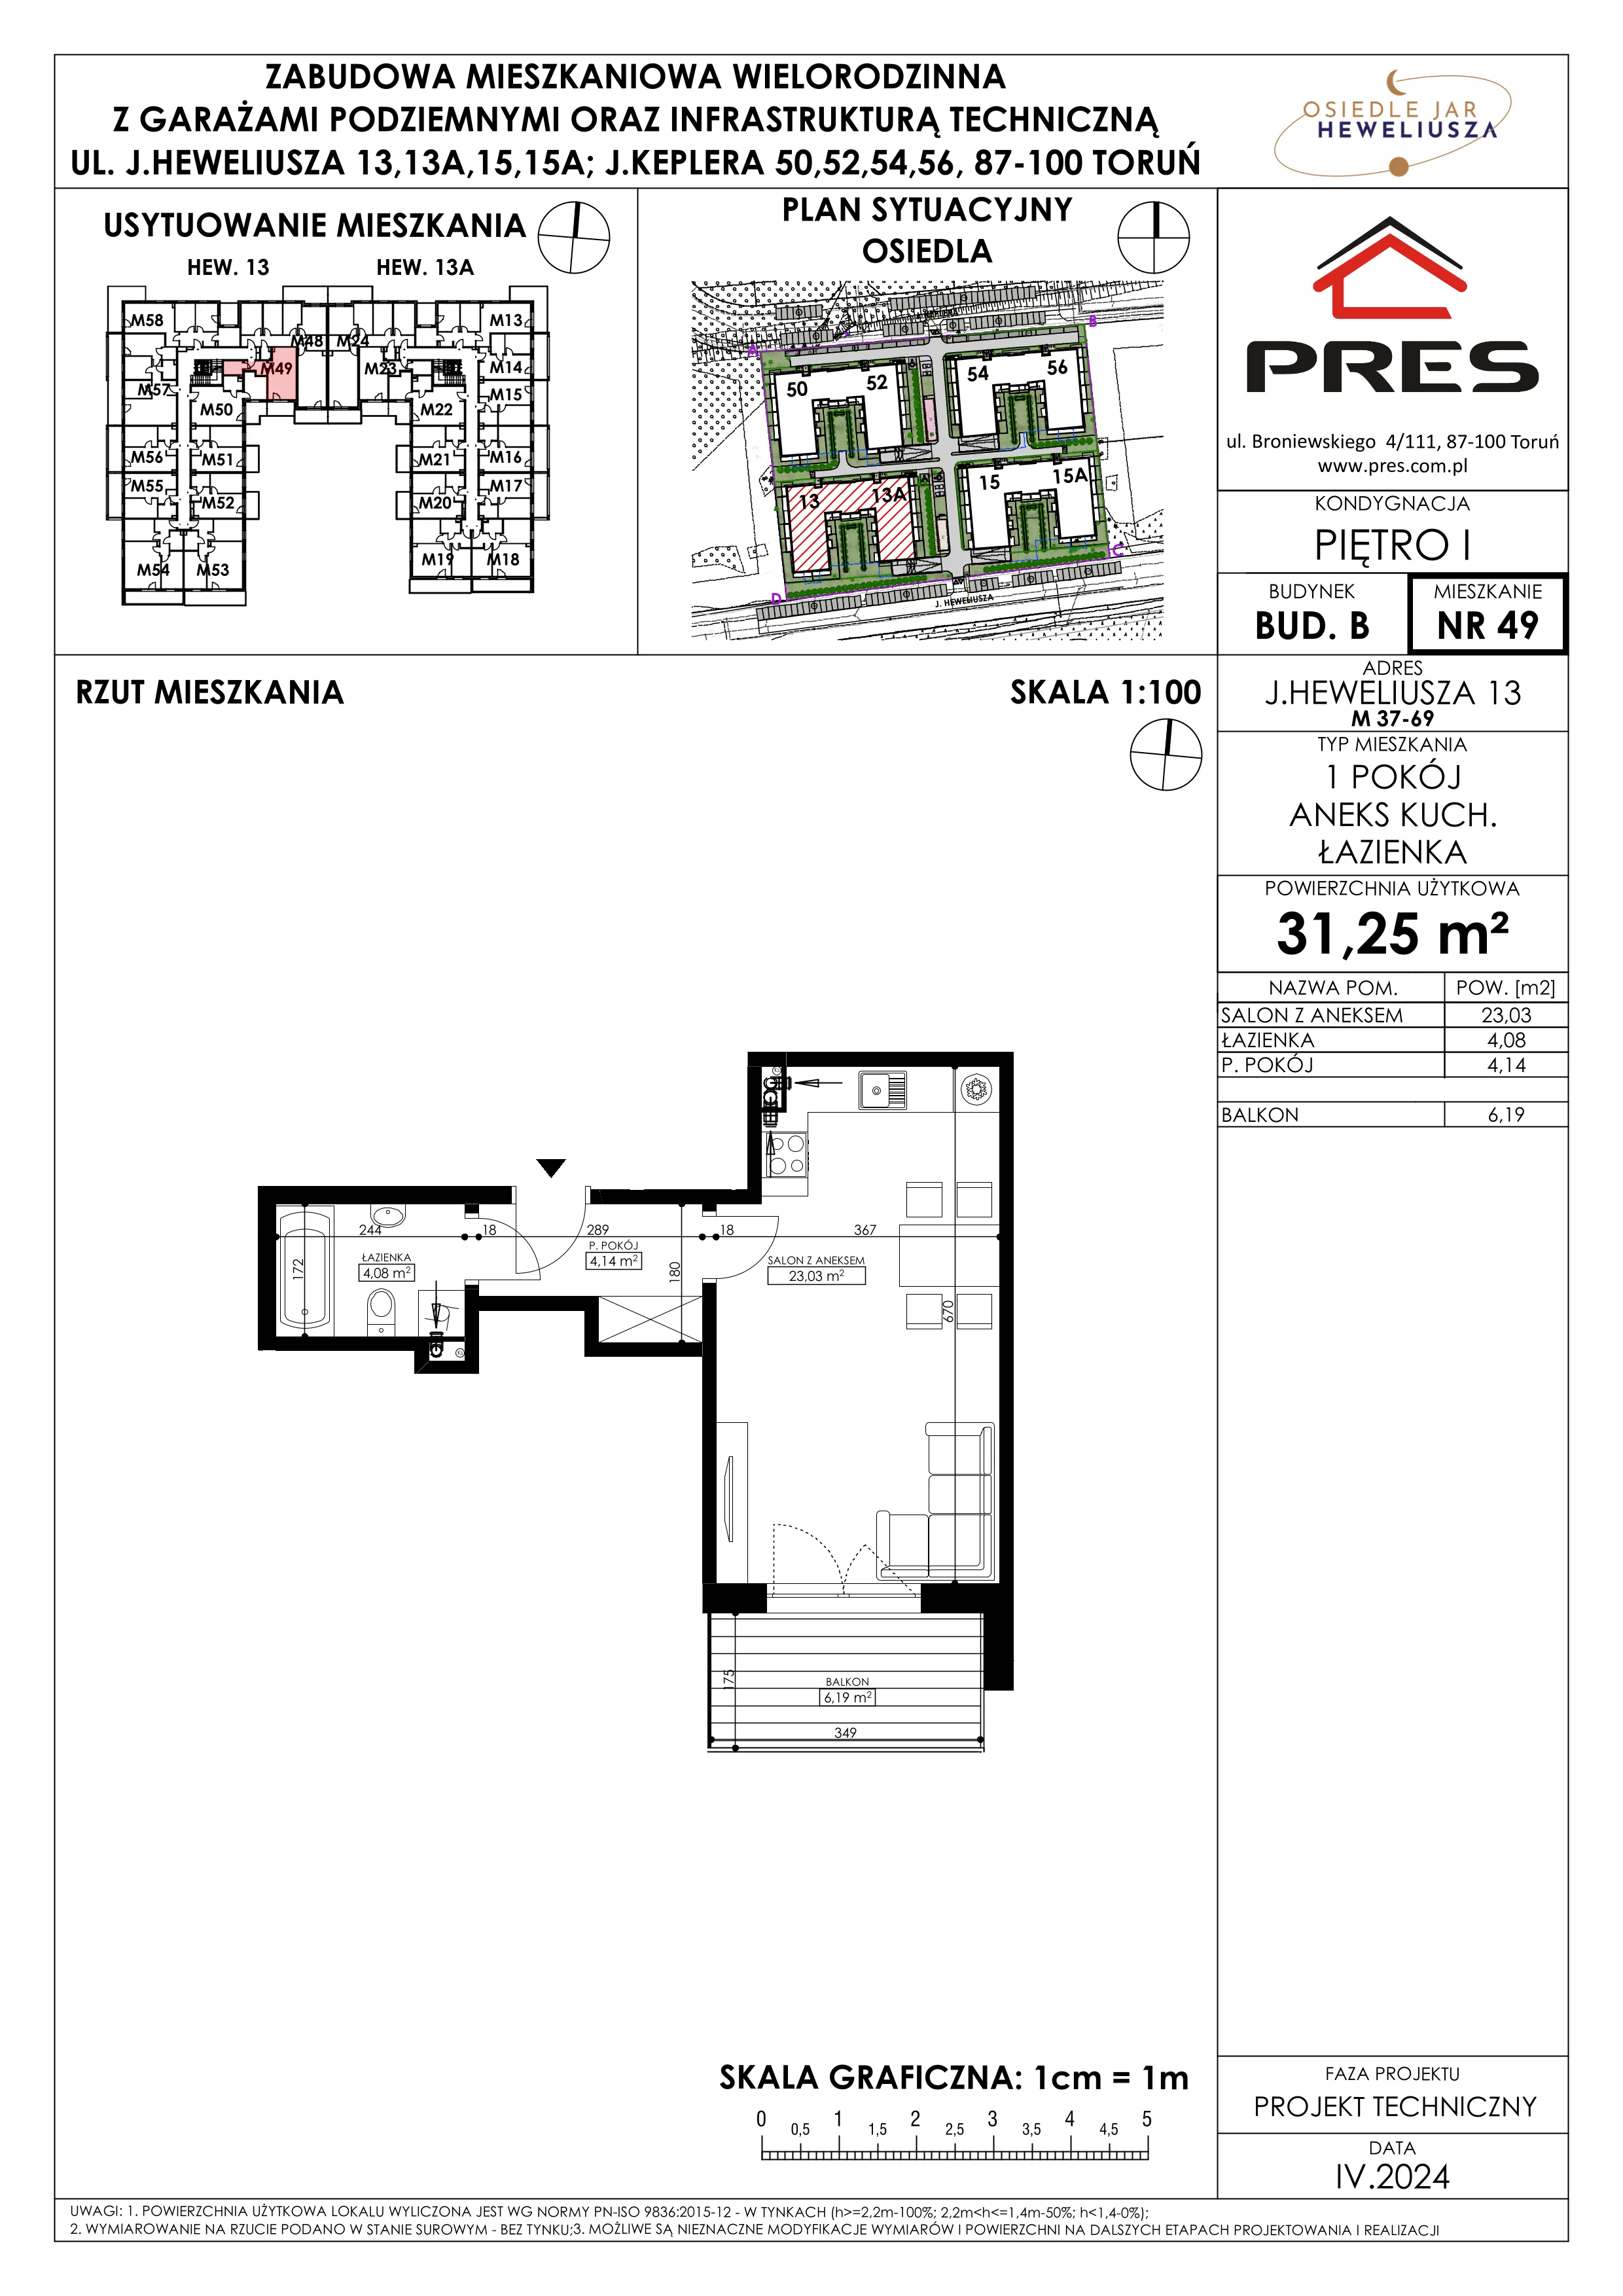 Mieszkanie 31,25 m², piętro 1, oferta nr 49, Osiedle JAR Heweliusza - Etap II, Toruń, Wrzosy, JAR, ul. Heweliusza 13-15A